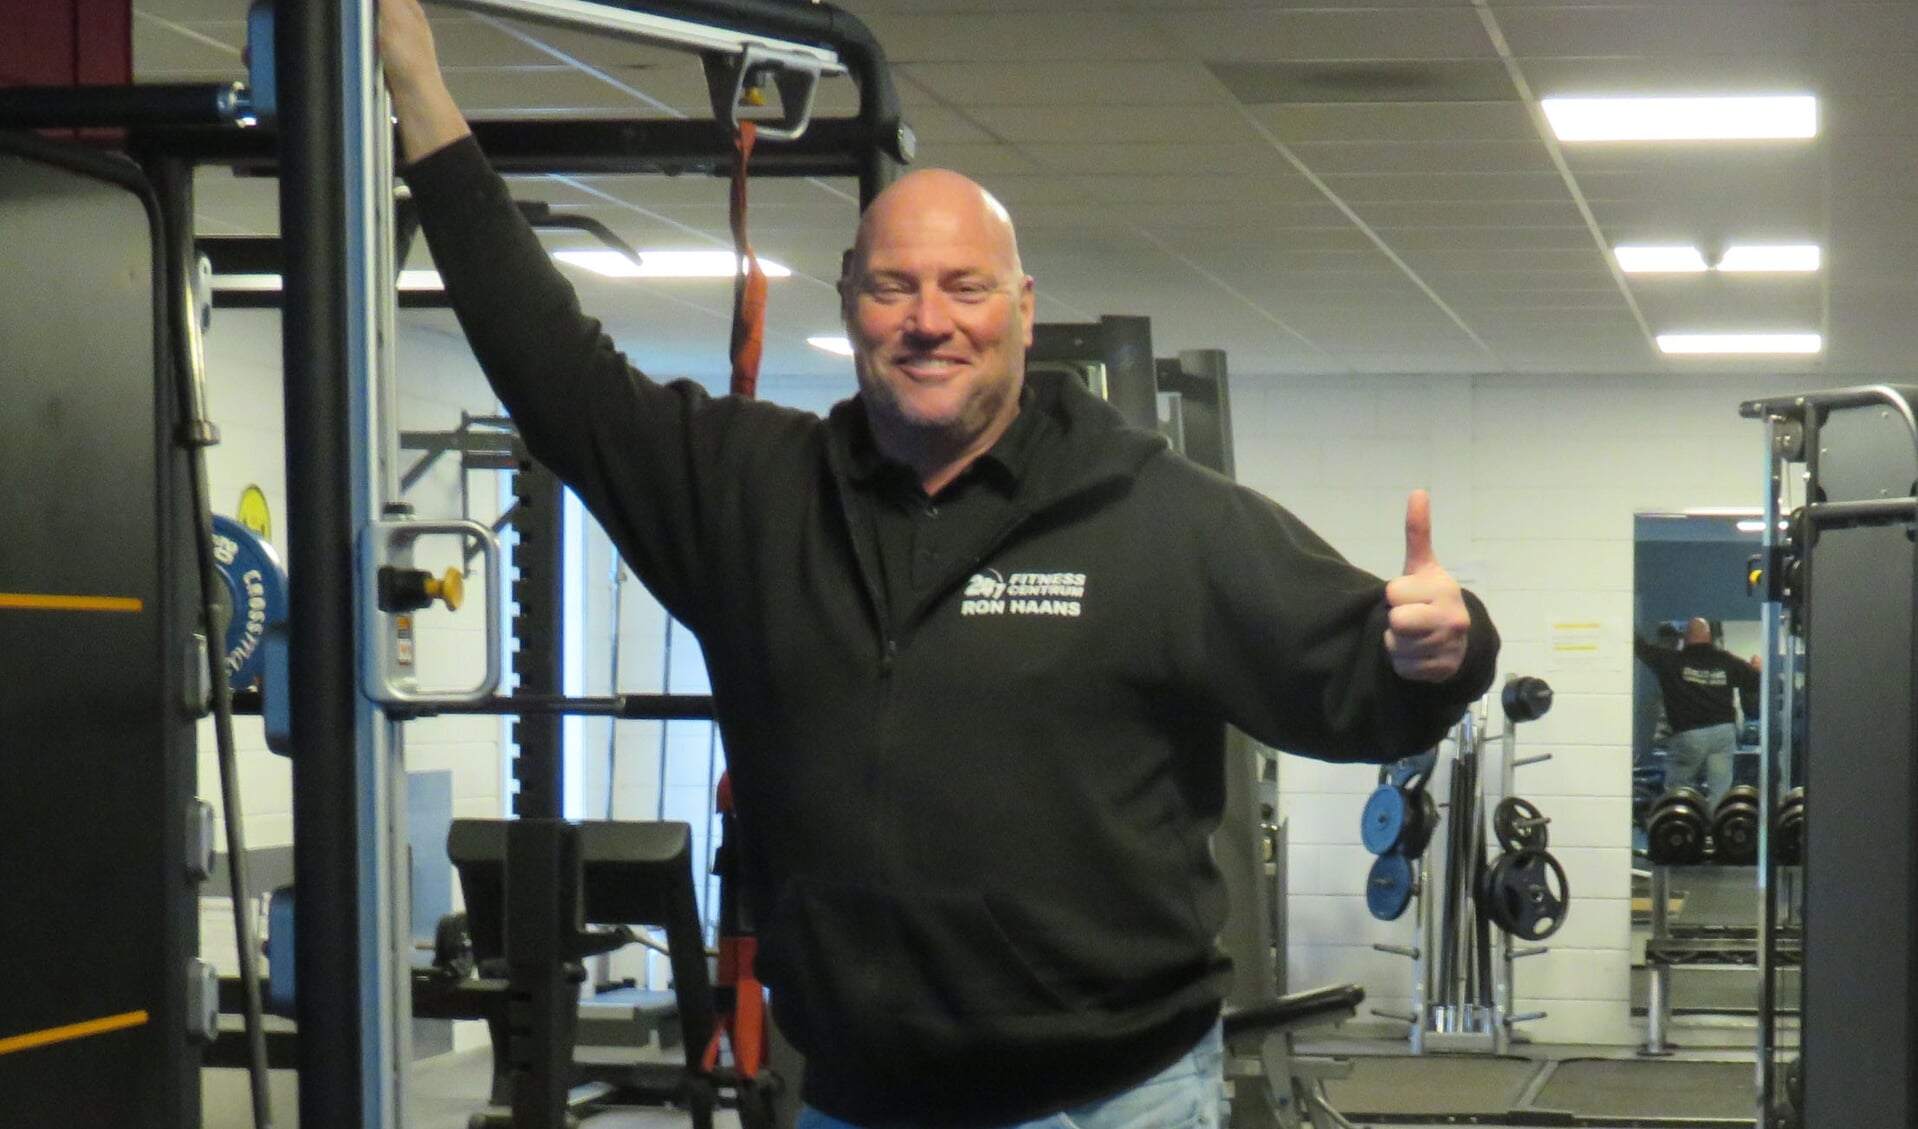 In de fitnesscentra van Ron Haans kan iedereen fitnessen naar eigen wens en doelstelling. 